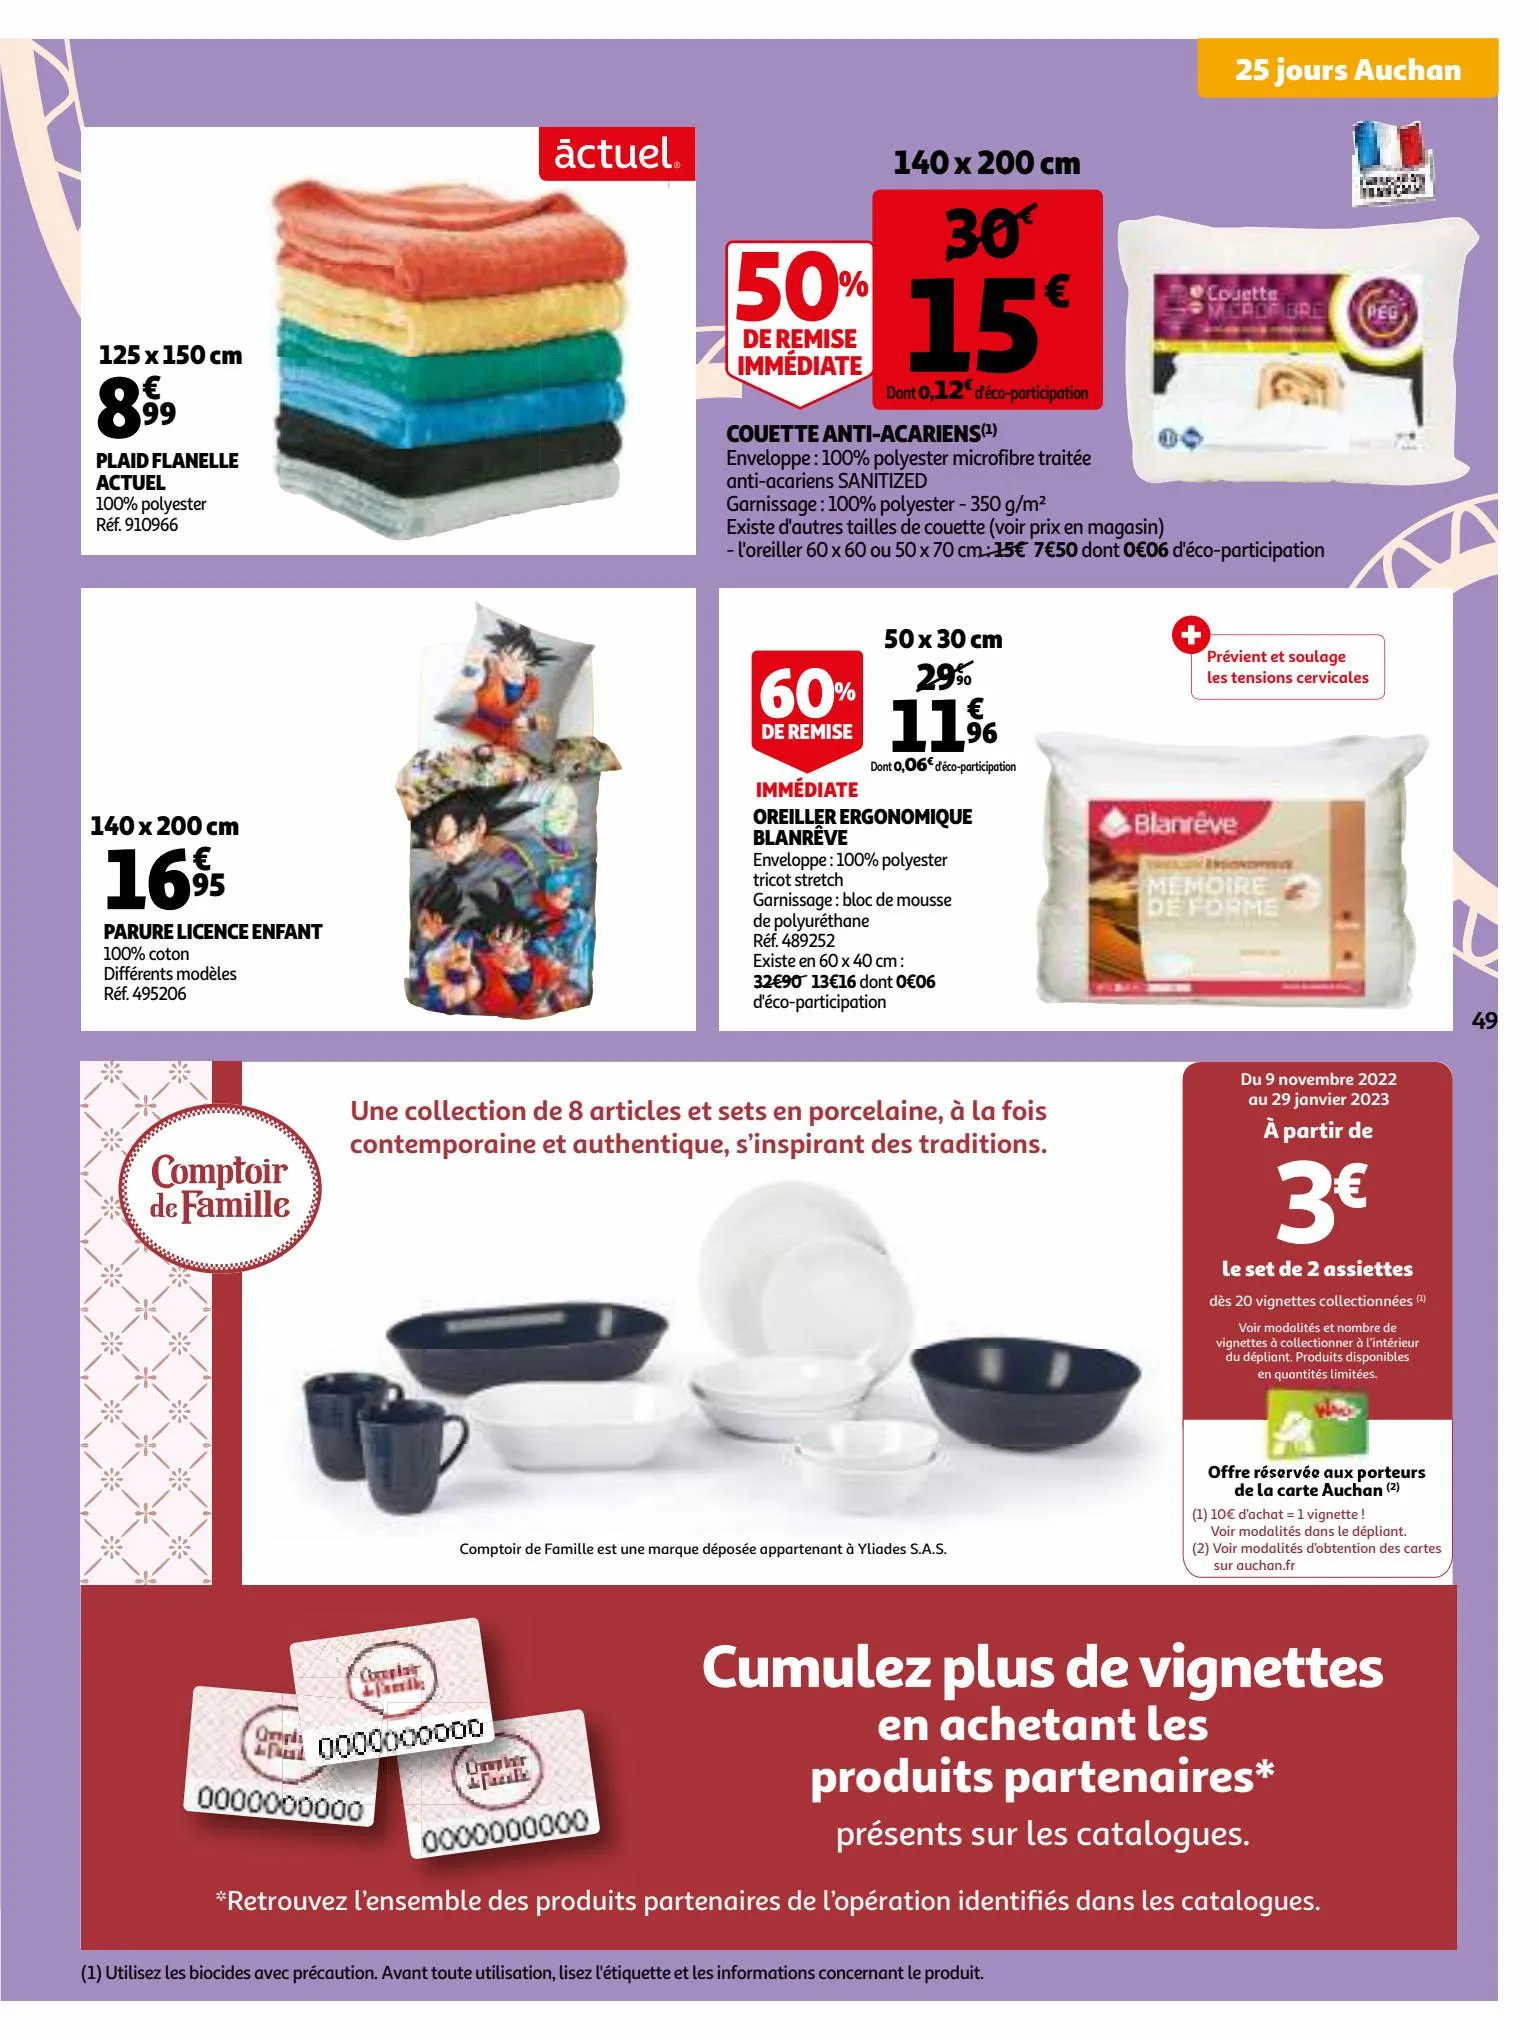 Catalogue 25 jours Auchan, page 00049